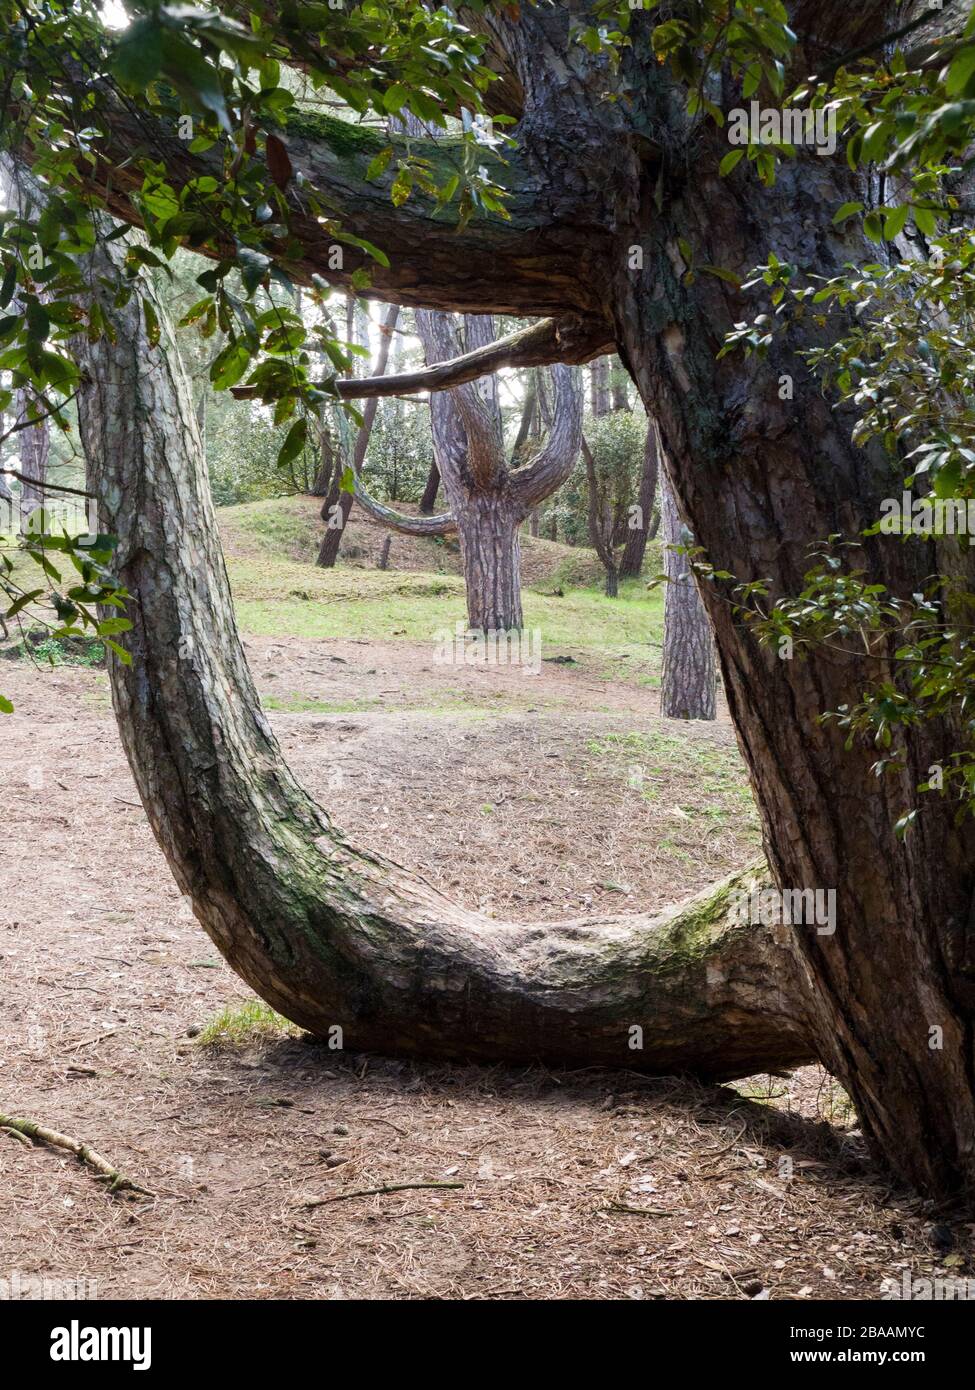 Zweig eines Kiefernbaumes, der sich am Boden auswächst, bevor er nach oben geht, Wells-next-the-Sea, Norfolk, Großbritannien Stockfoto